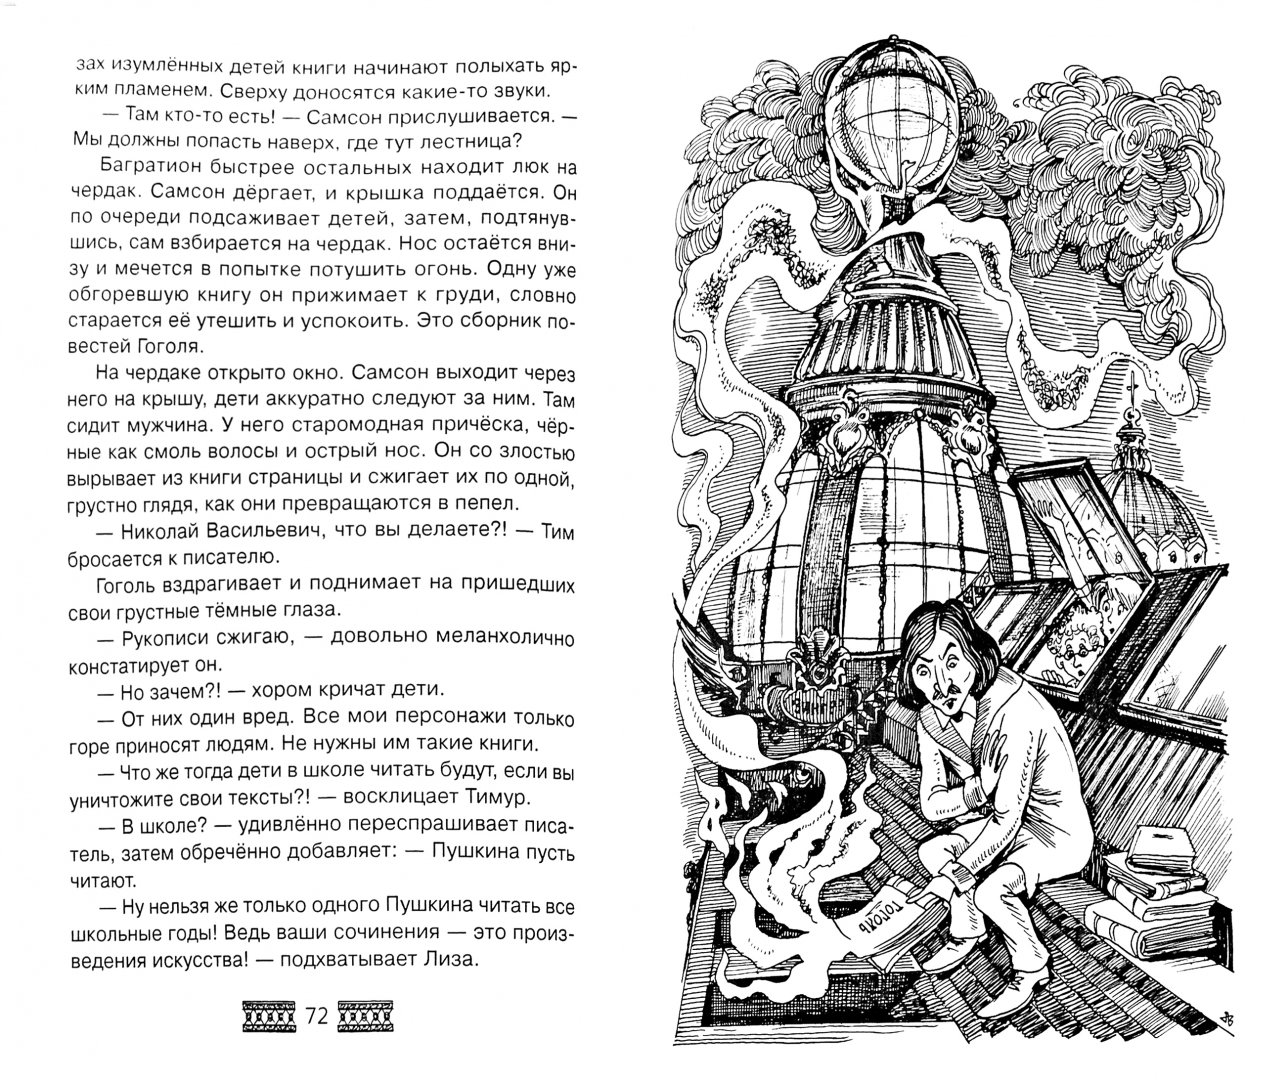 Иллюстрация 1 из 3 для Шуба, перо и золотая статуя - Геос, Геос | Лабиринт - книги. Источник: Лабиринт